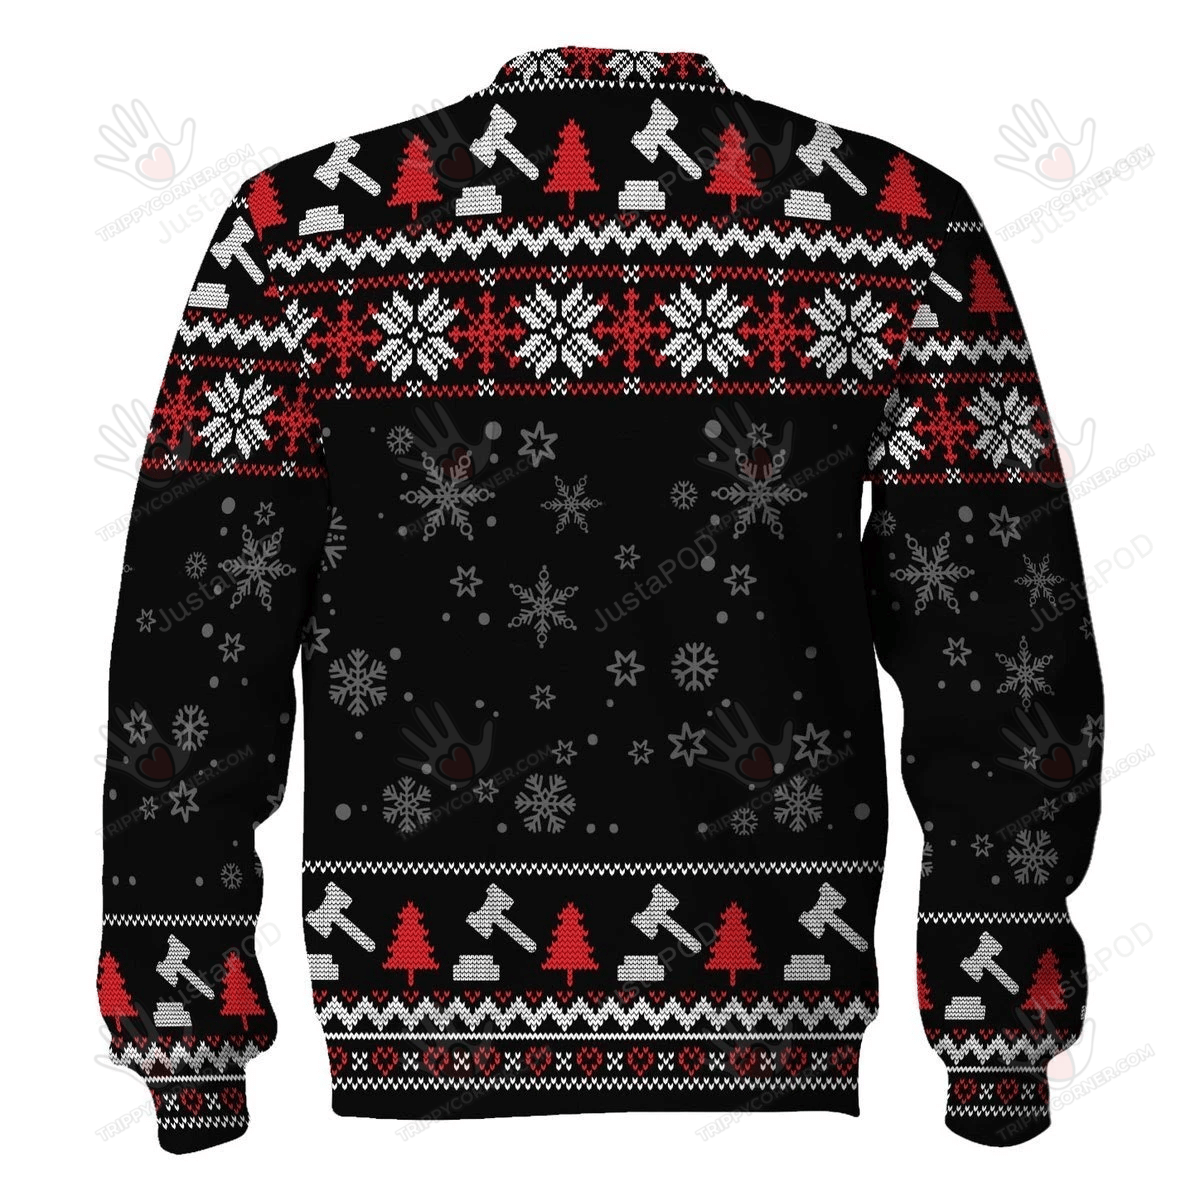 Merry Christmas Gearhomies Rbg Ugly Christmas Sweater, All Over Print Ugly Sweater Christmas Gift   415